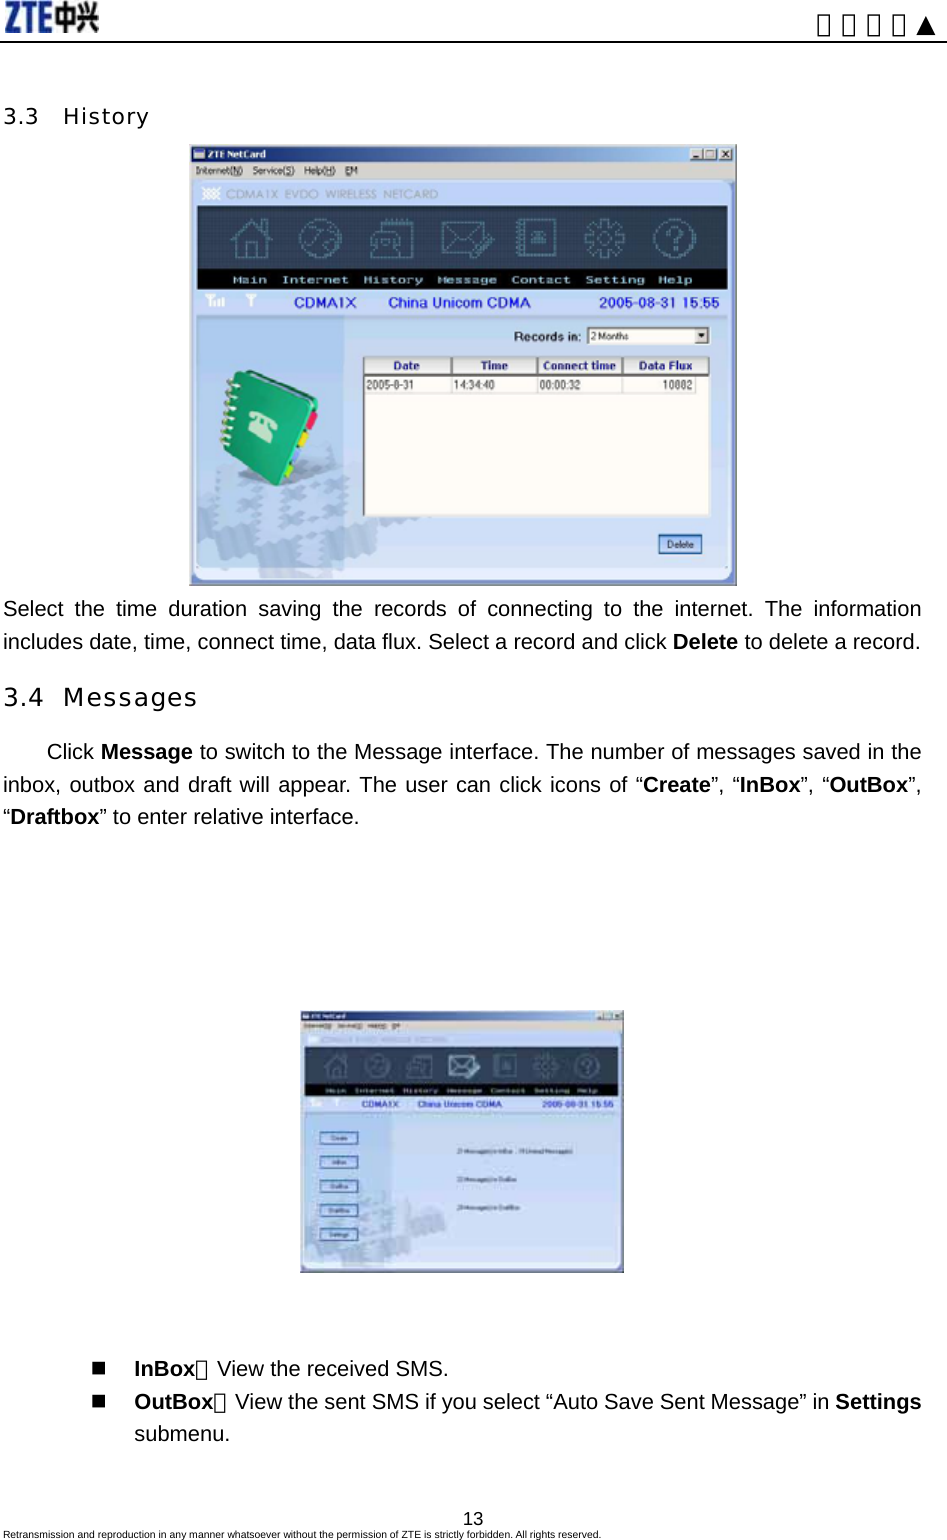                                                                      内部公开▲ 3.3 History  Select the time duration saving the records of connecting to the internet. The information includes date, time, connect time, data flux. Select a record and click Delete to delete a record. 3.4 Messages Click Message to switch to the Message interface. The number of messages saved in the inbox, outbox and draft will appear. The user can click icons of “Create”, “InBox”, “OutBox”, “Draftbox” to enter relative interface.          InBox：View the received SMS.  OutBox：View the sent SMS if you select “Auto Save Sent Message” in Settings submenu.  Retransmission and reproduction in any manner whatsoever without the permission of ZTE is strictly forbidden. All rights reserved.  13